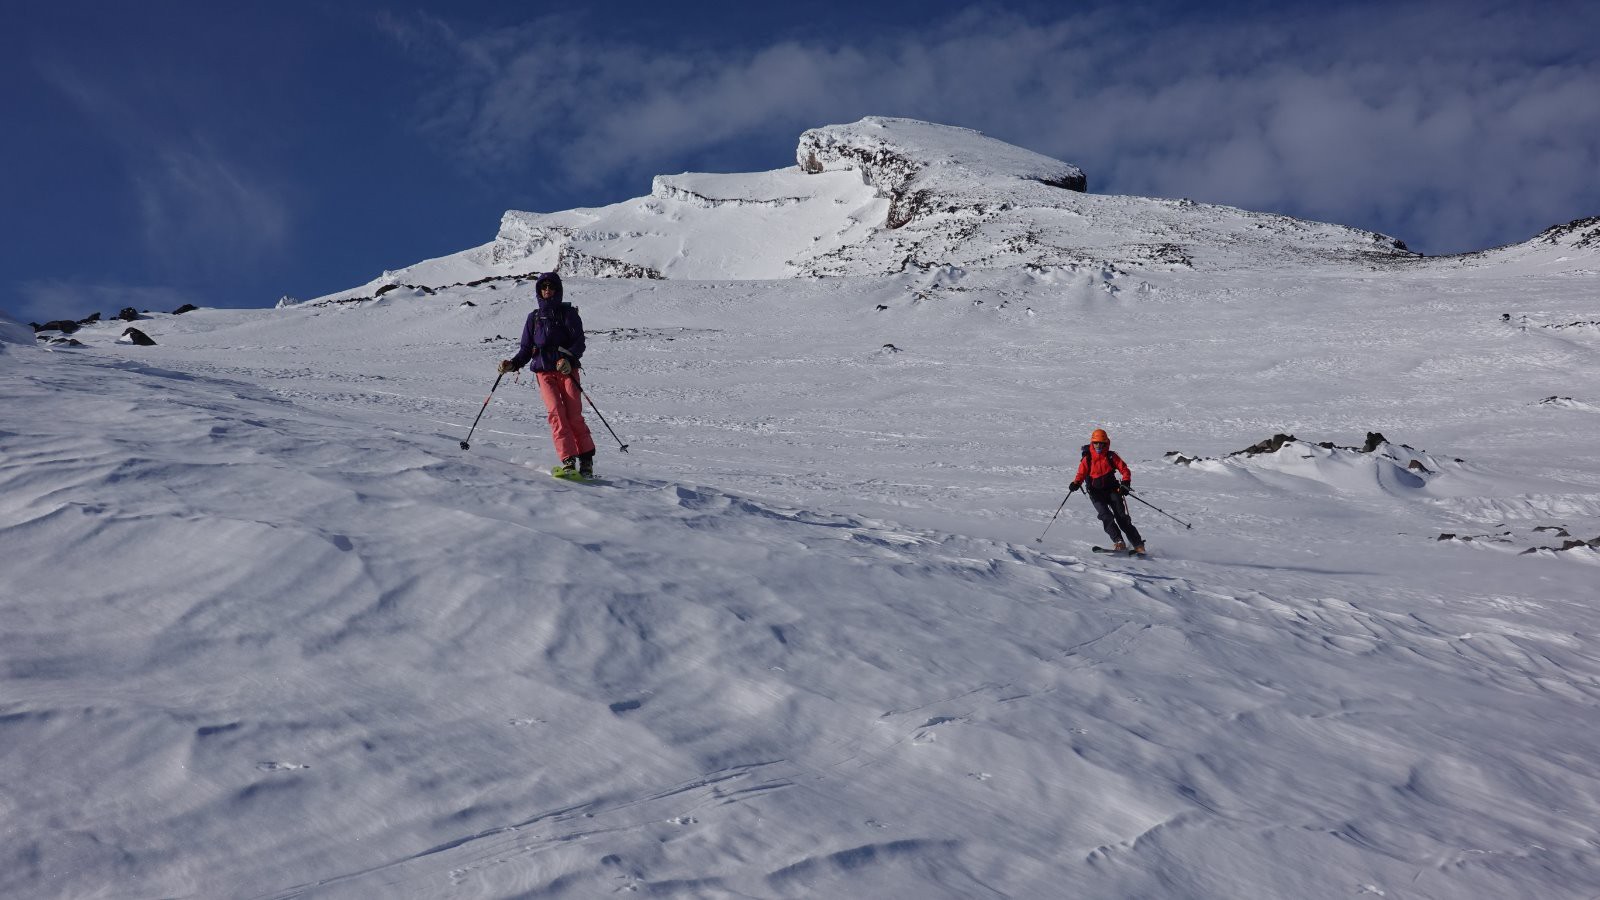 Descente en ski sur neige lissée par le vent agréable à skier